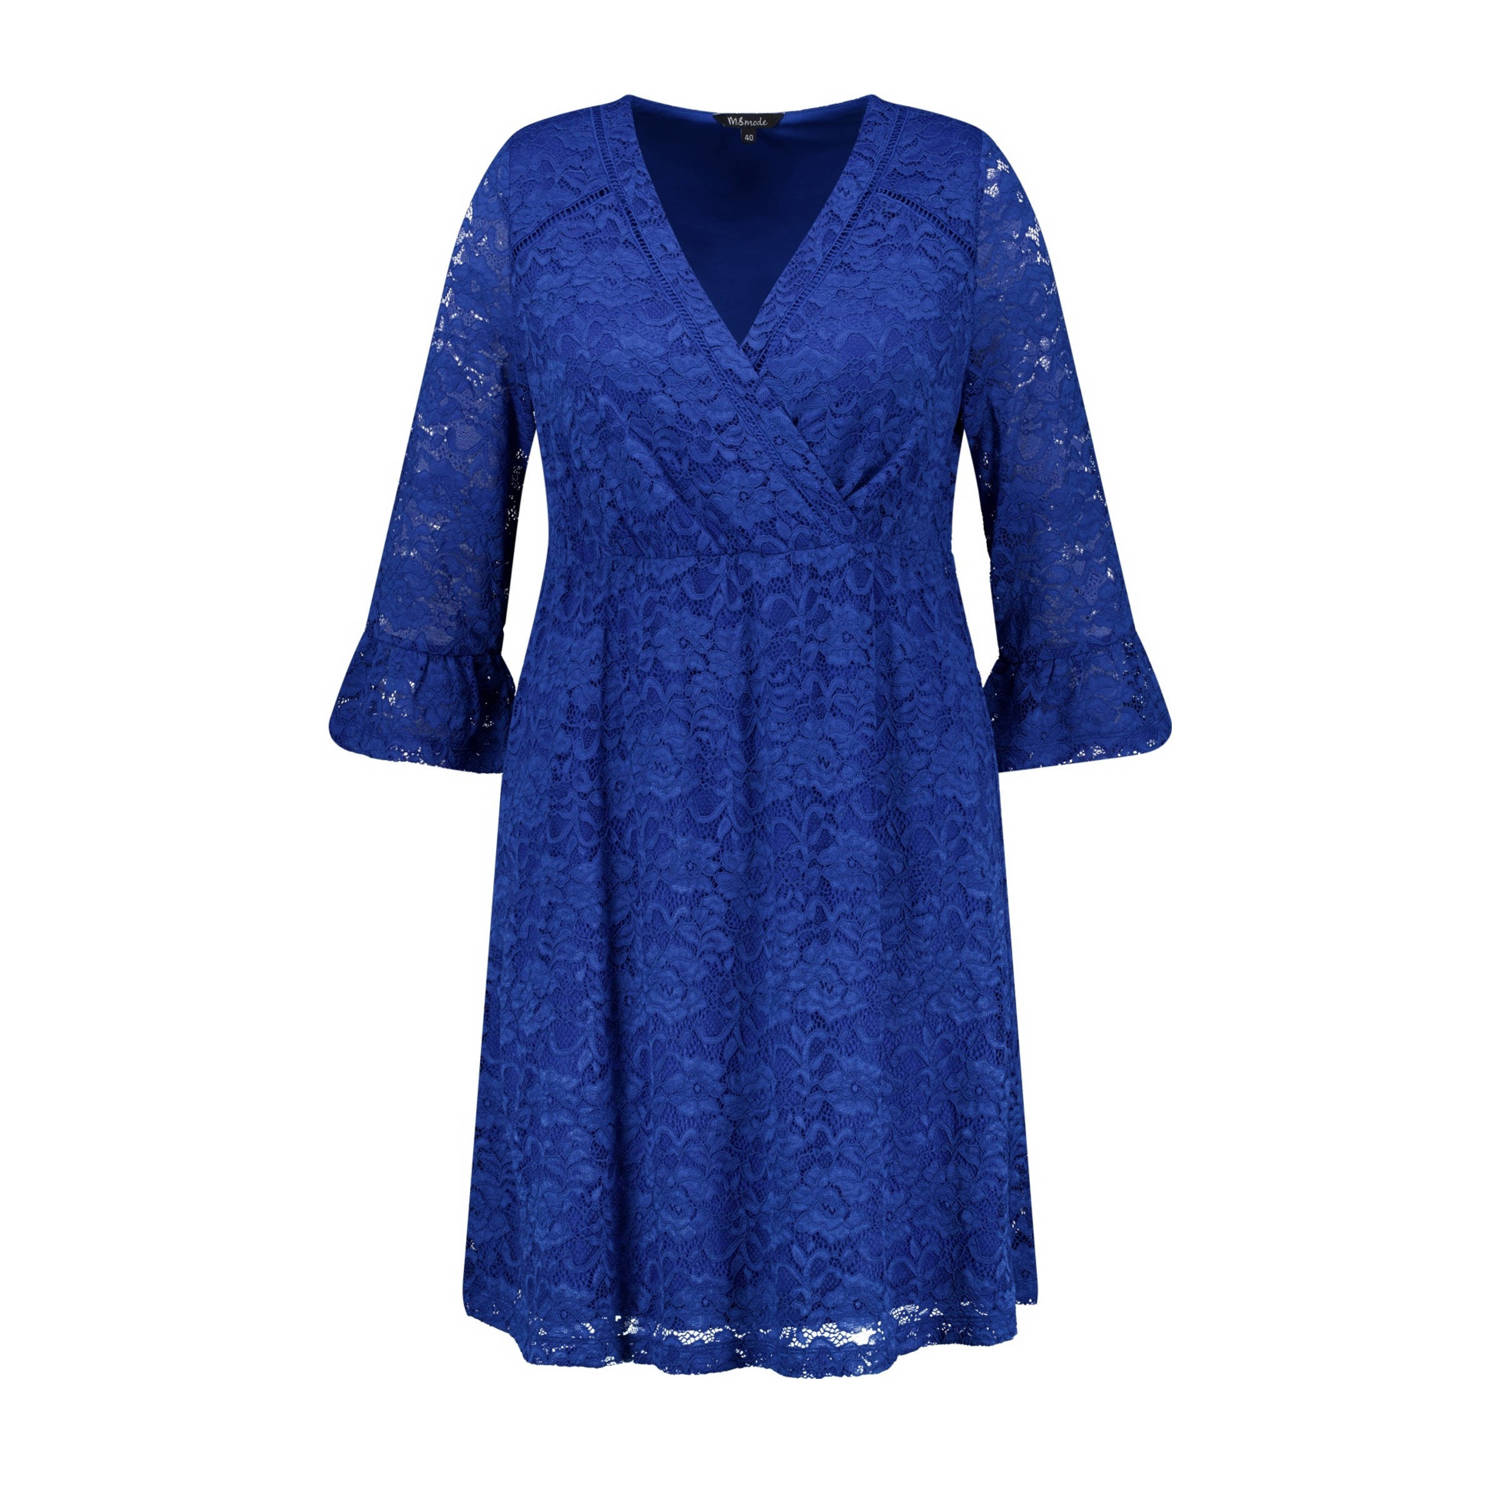 MS Mode A-lijn jurk blauw